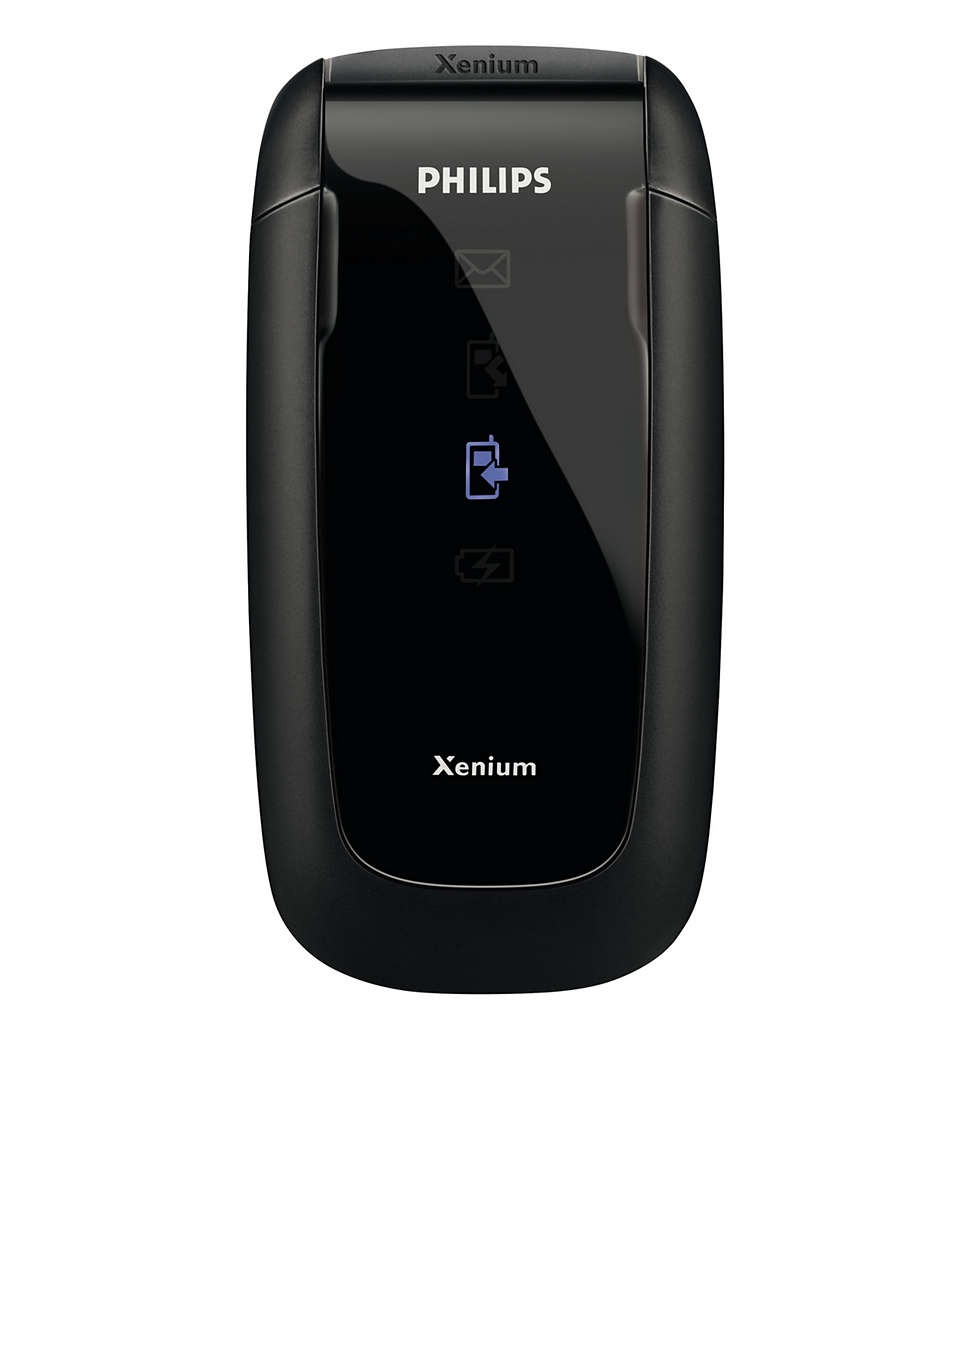 Philips xenium раскладушка. Philips Xenium 9. Филипс ксениум 9@9. Телефон Philips Xenium 9@9h. Philips Xenium раскладушка 9@9h.